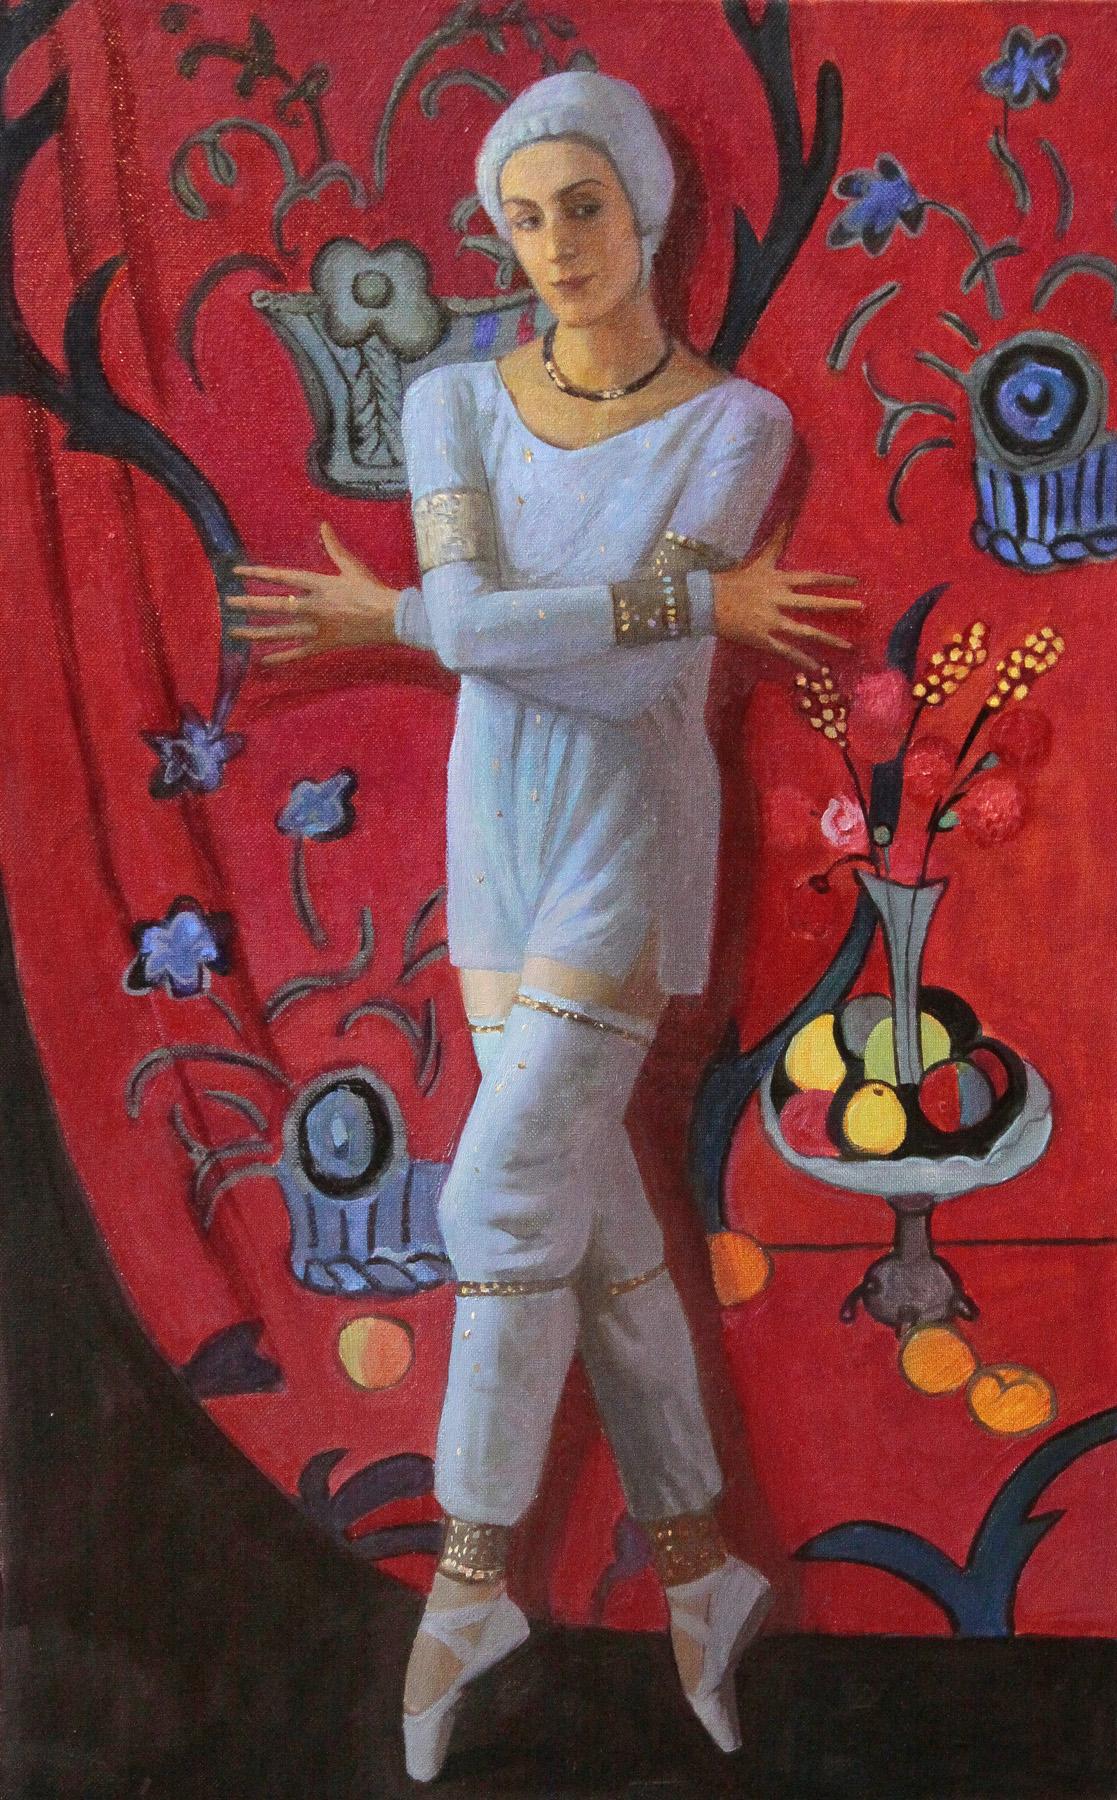 艾丽西亚*马尔科娃在服装夜莺马蒂斯. Original modern art painting